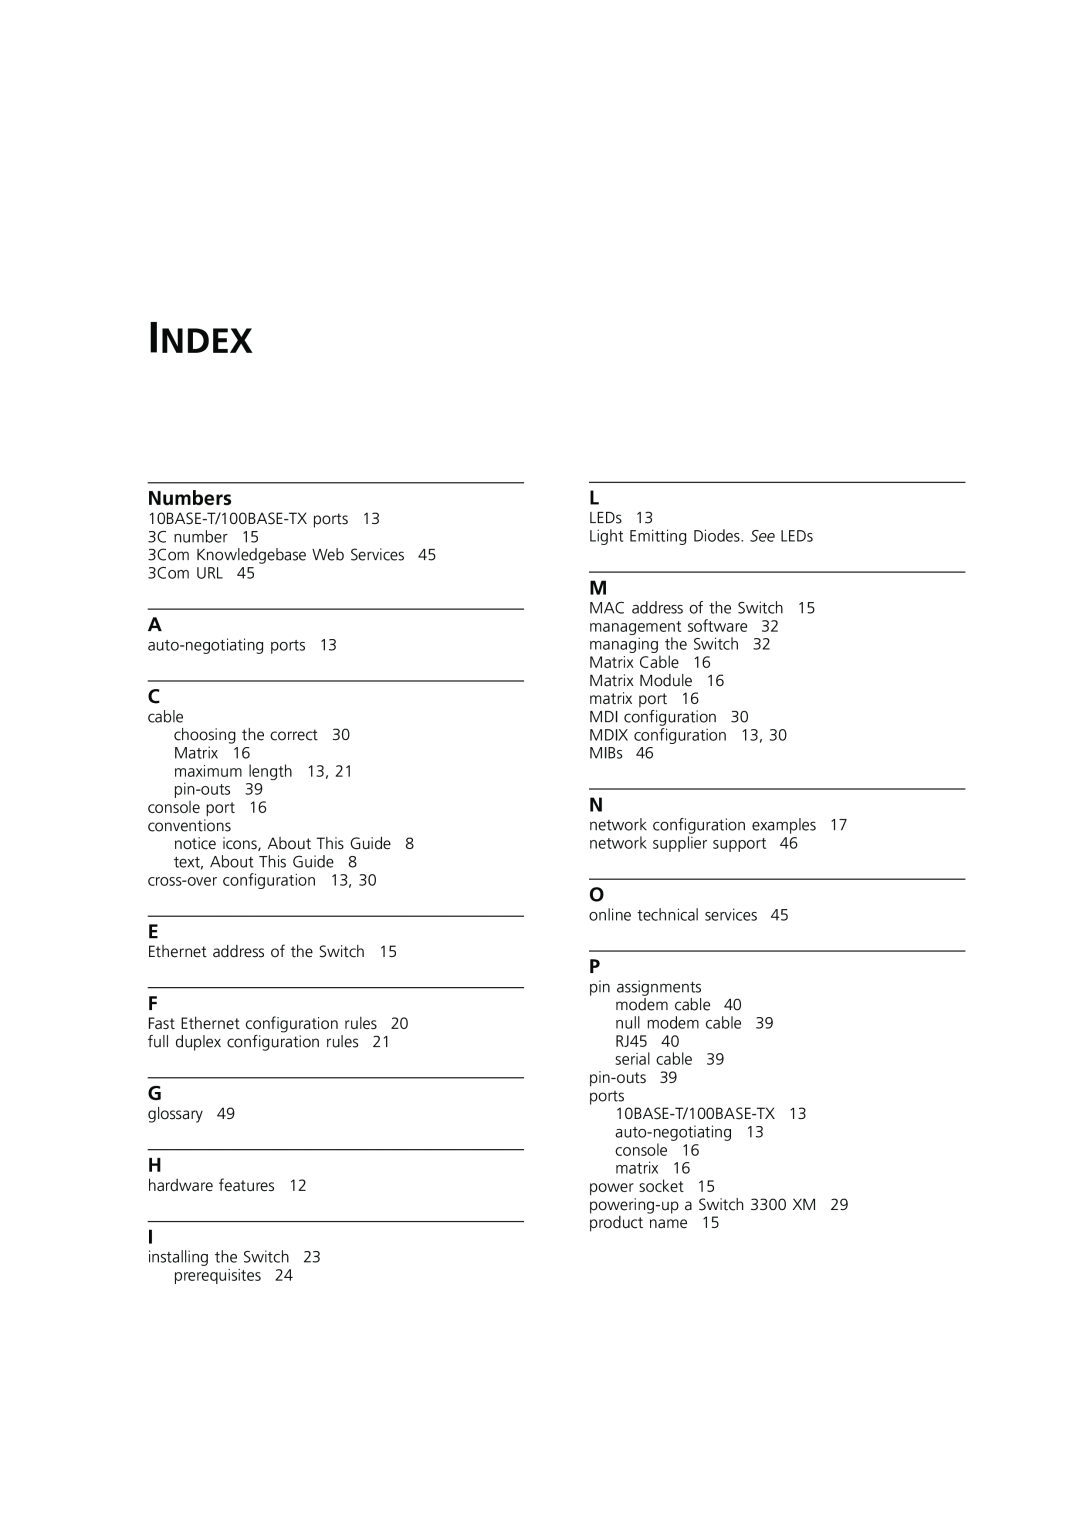 3Com DUA1698 manual Index 